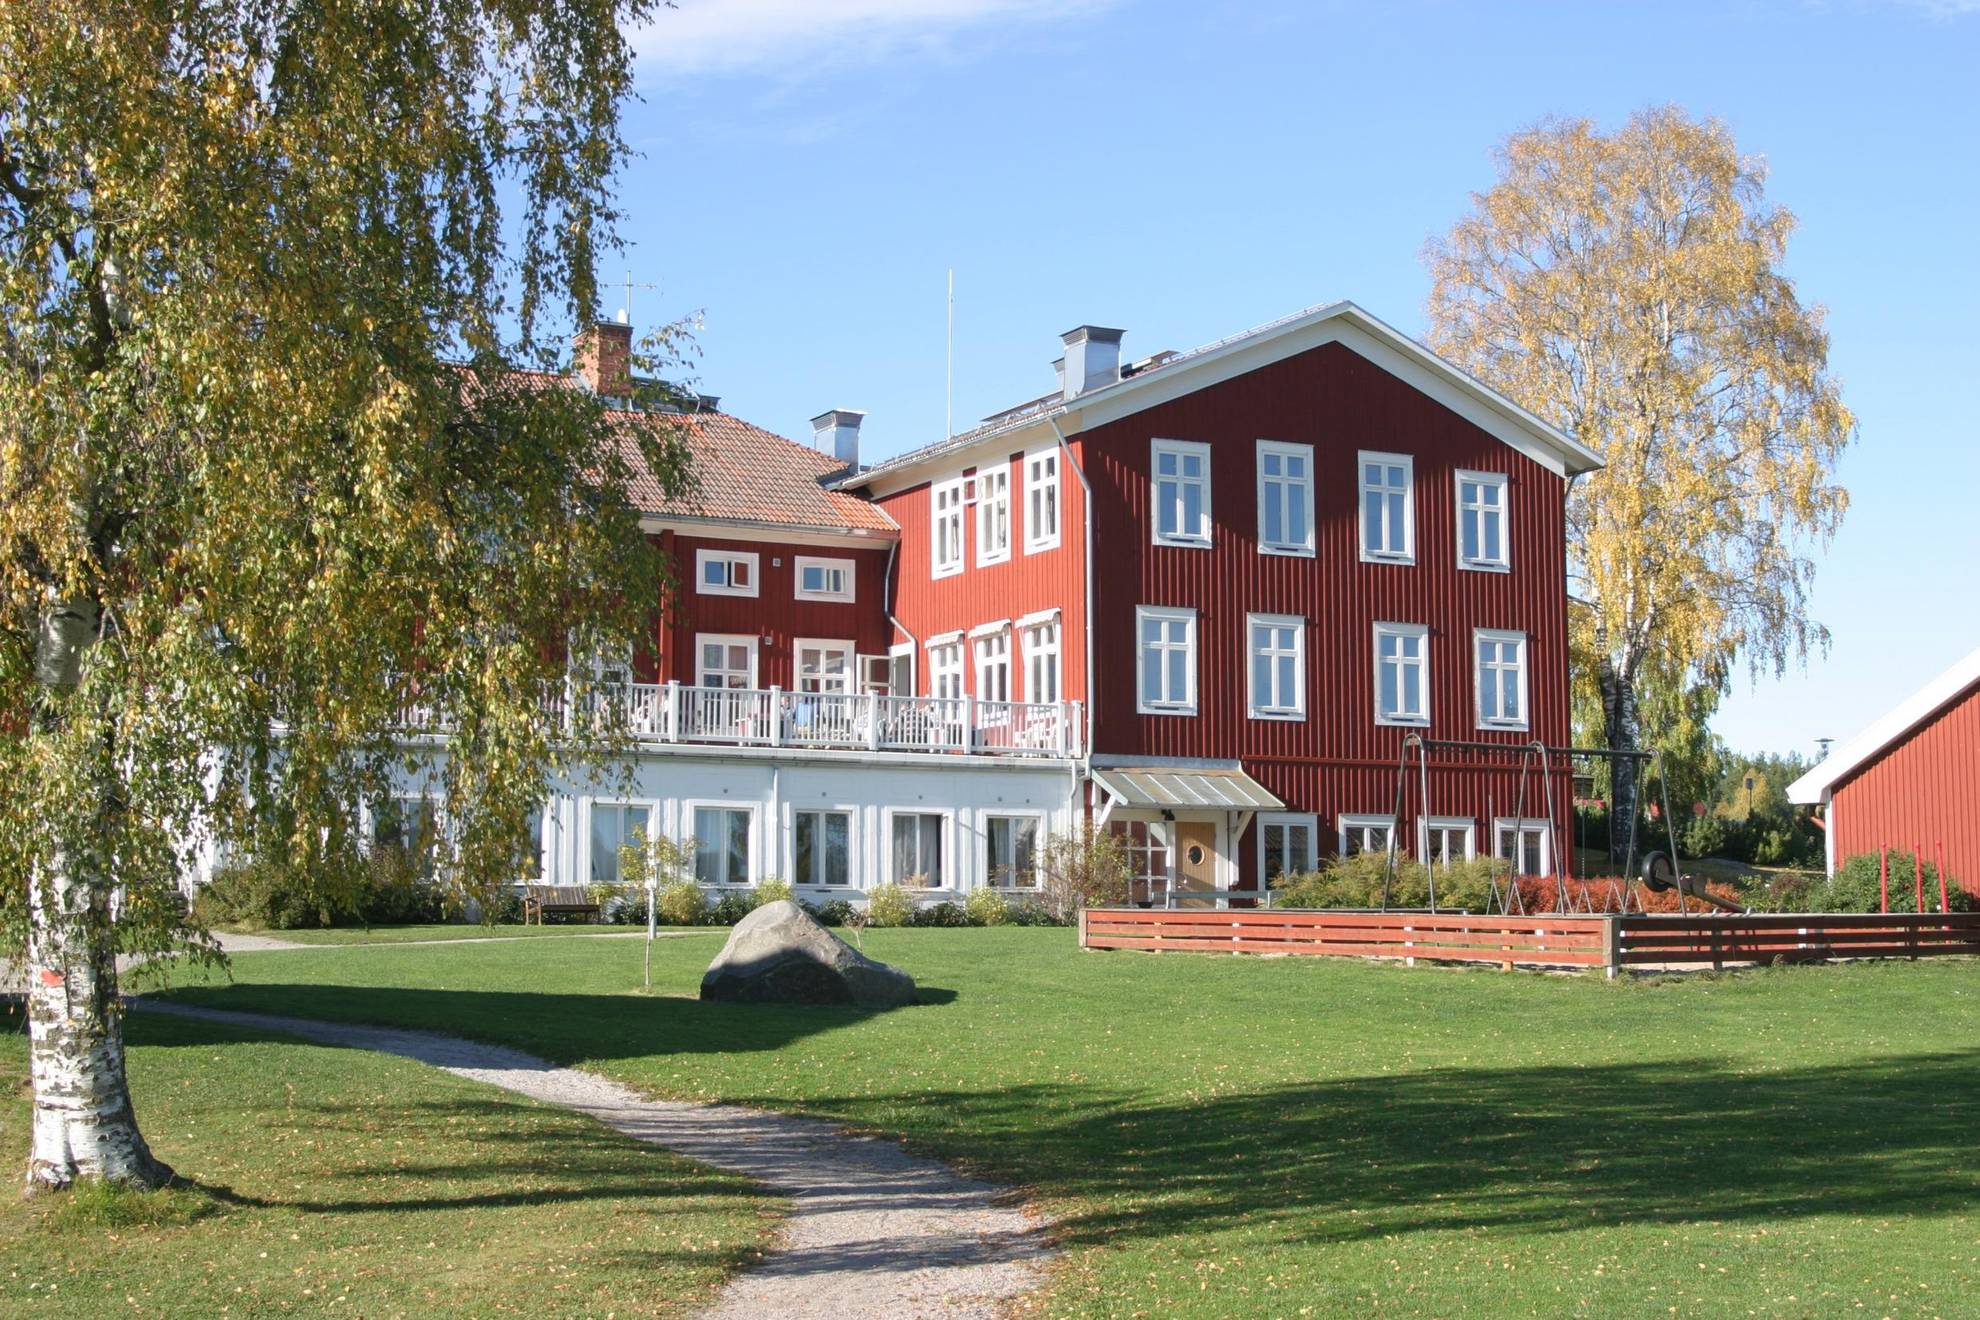 The hotel STF Undersvik Gårdshotell in Hälsingland during summer.